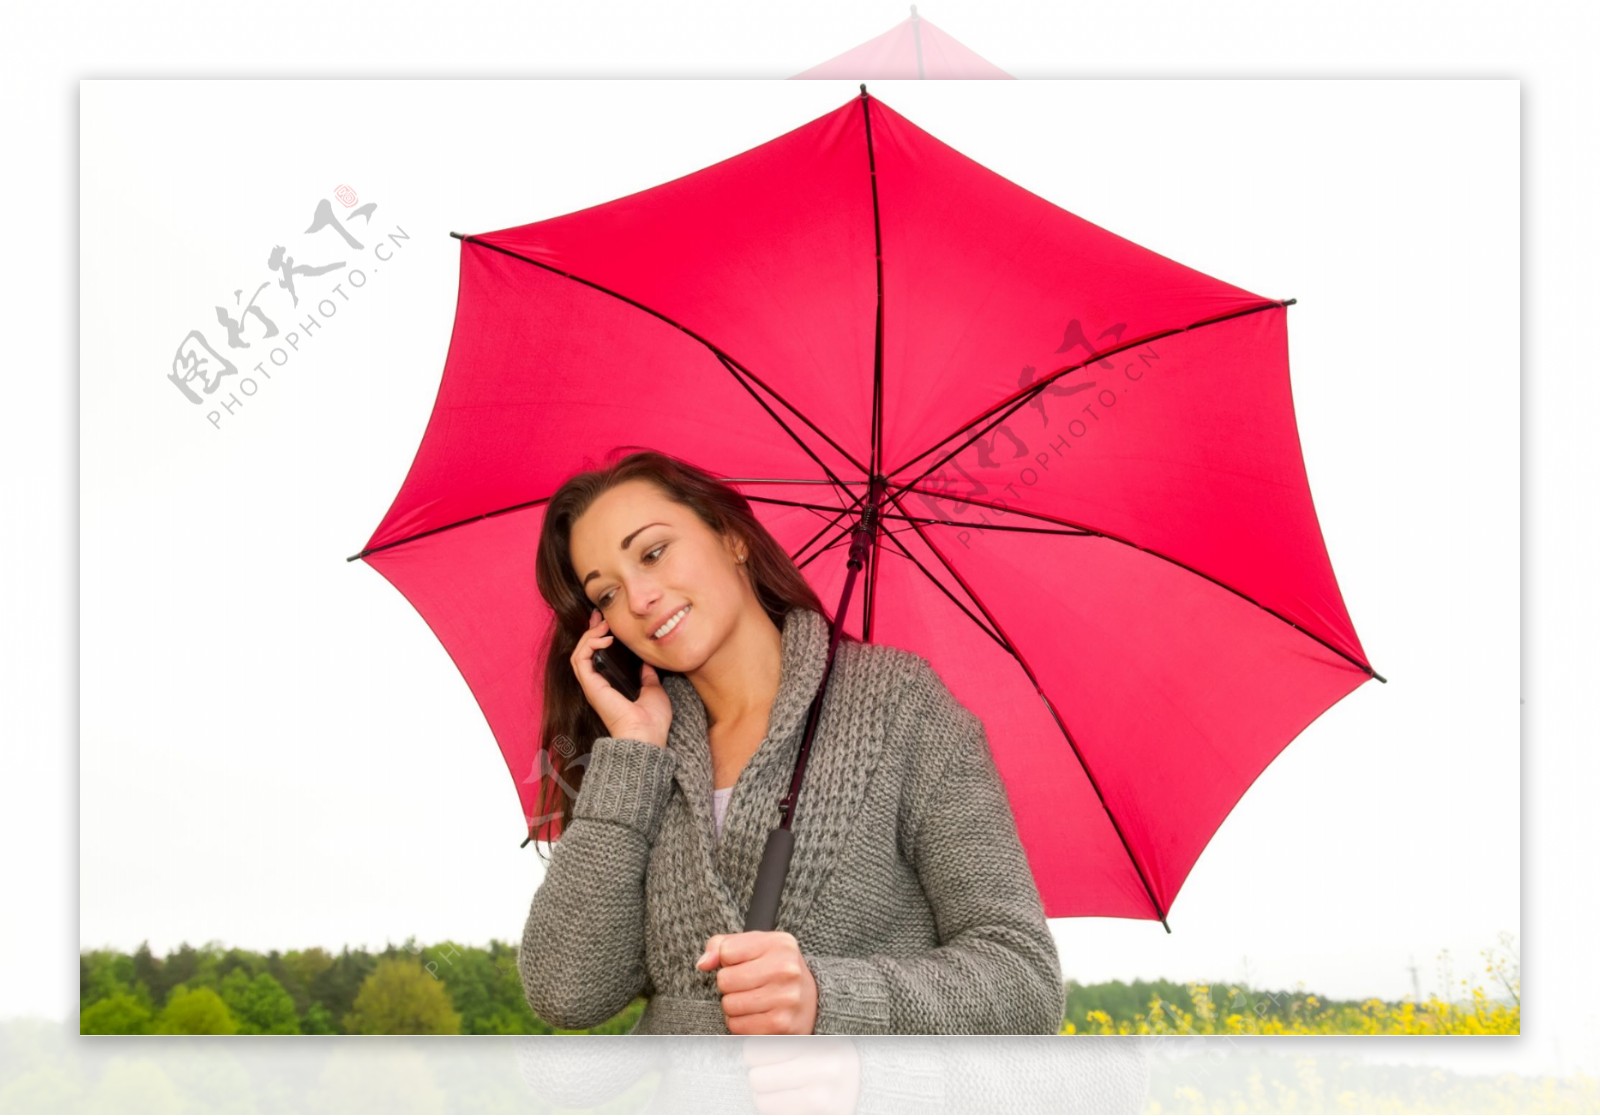 打伞的时尚美女图片